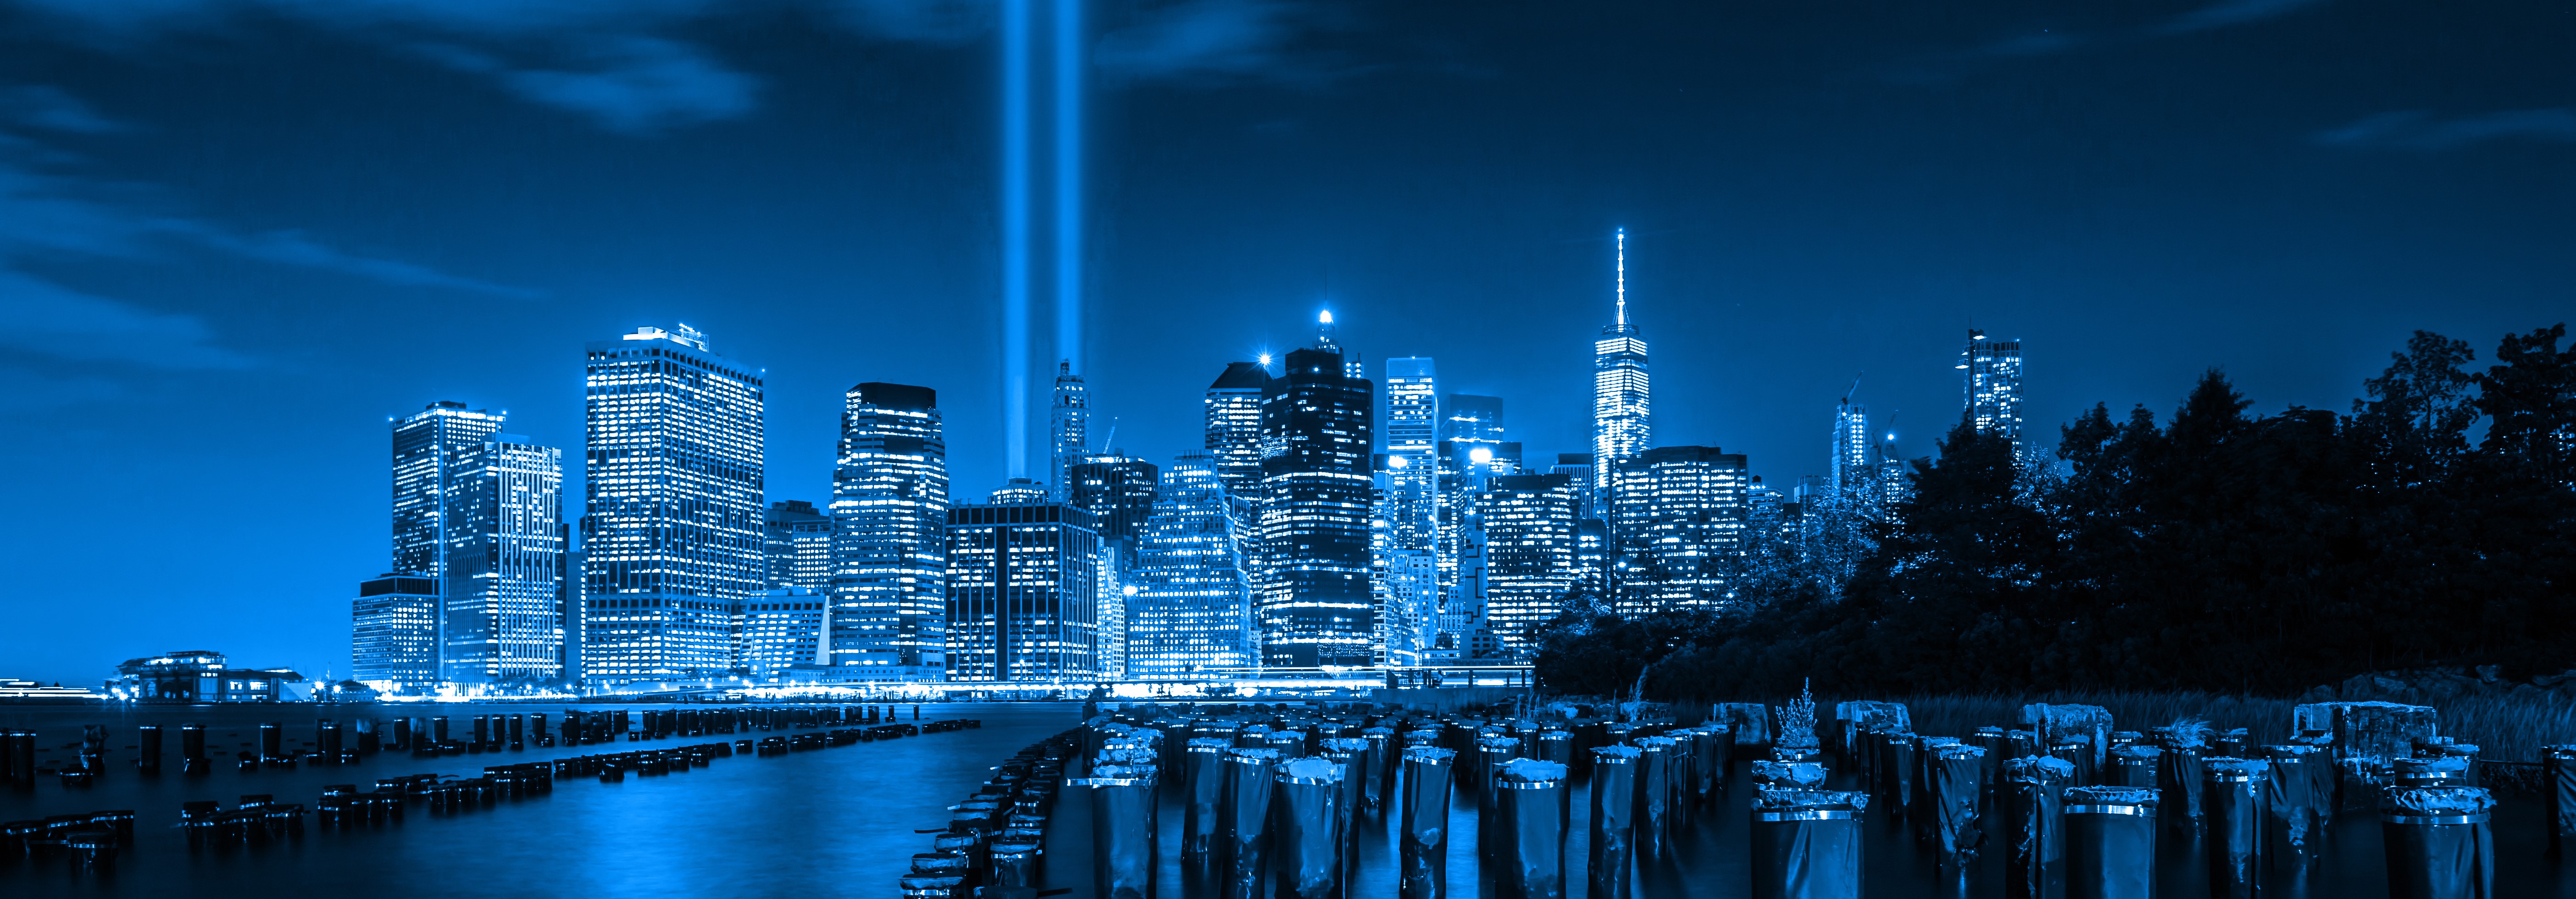 20 Year Anniversary of 9/11